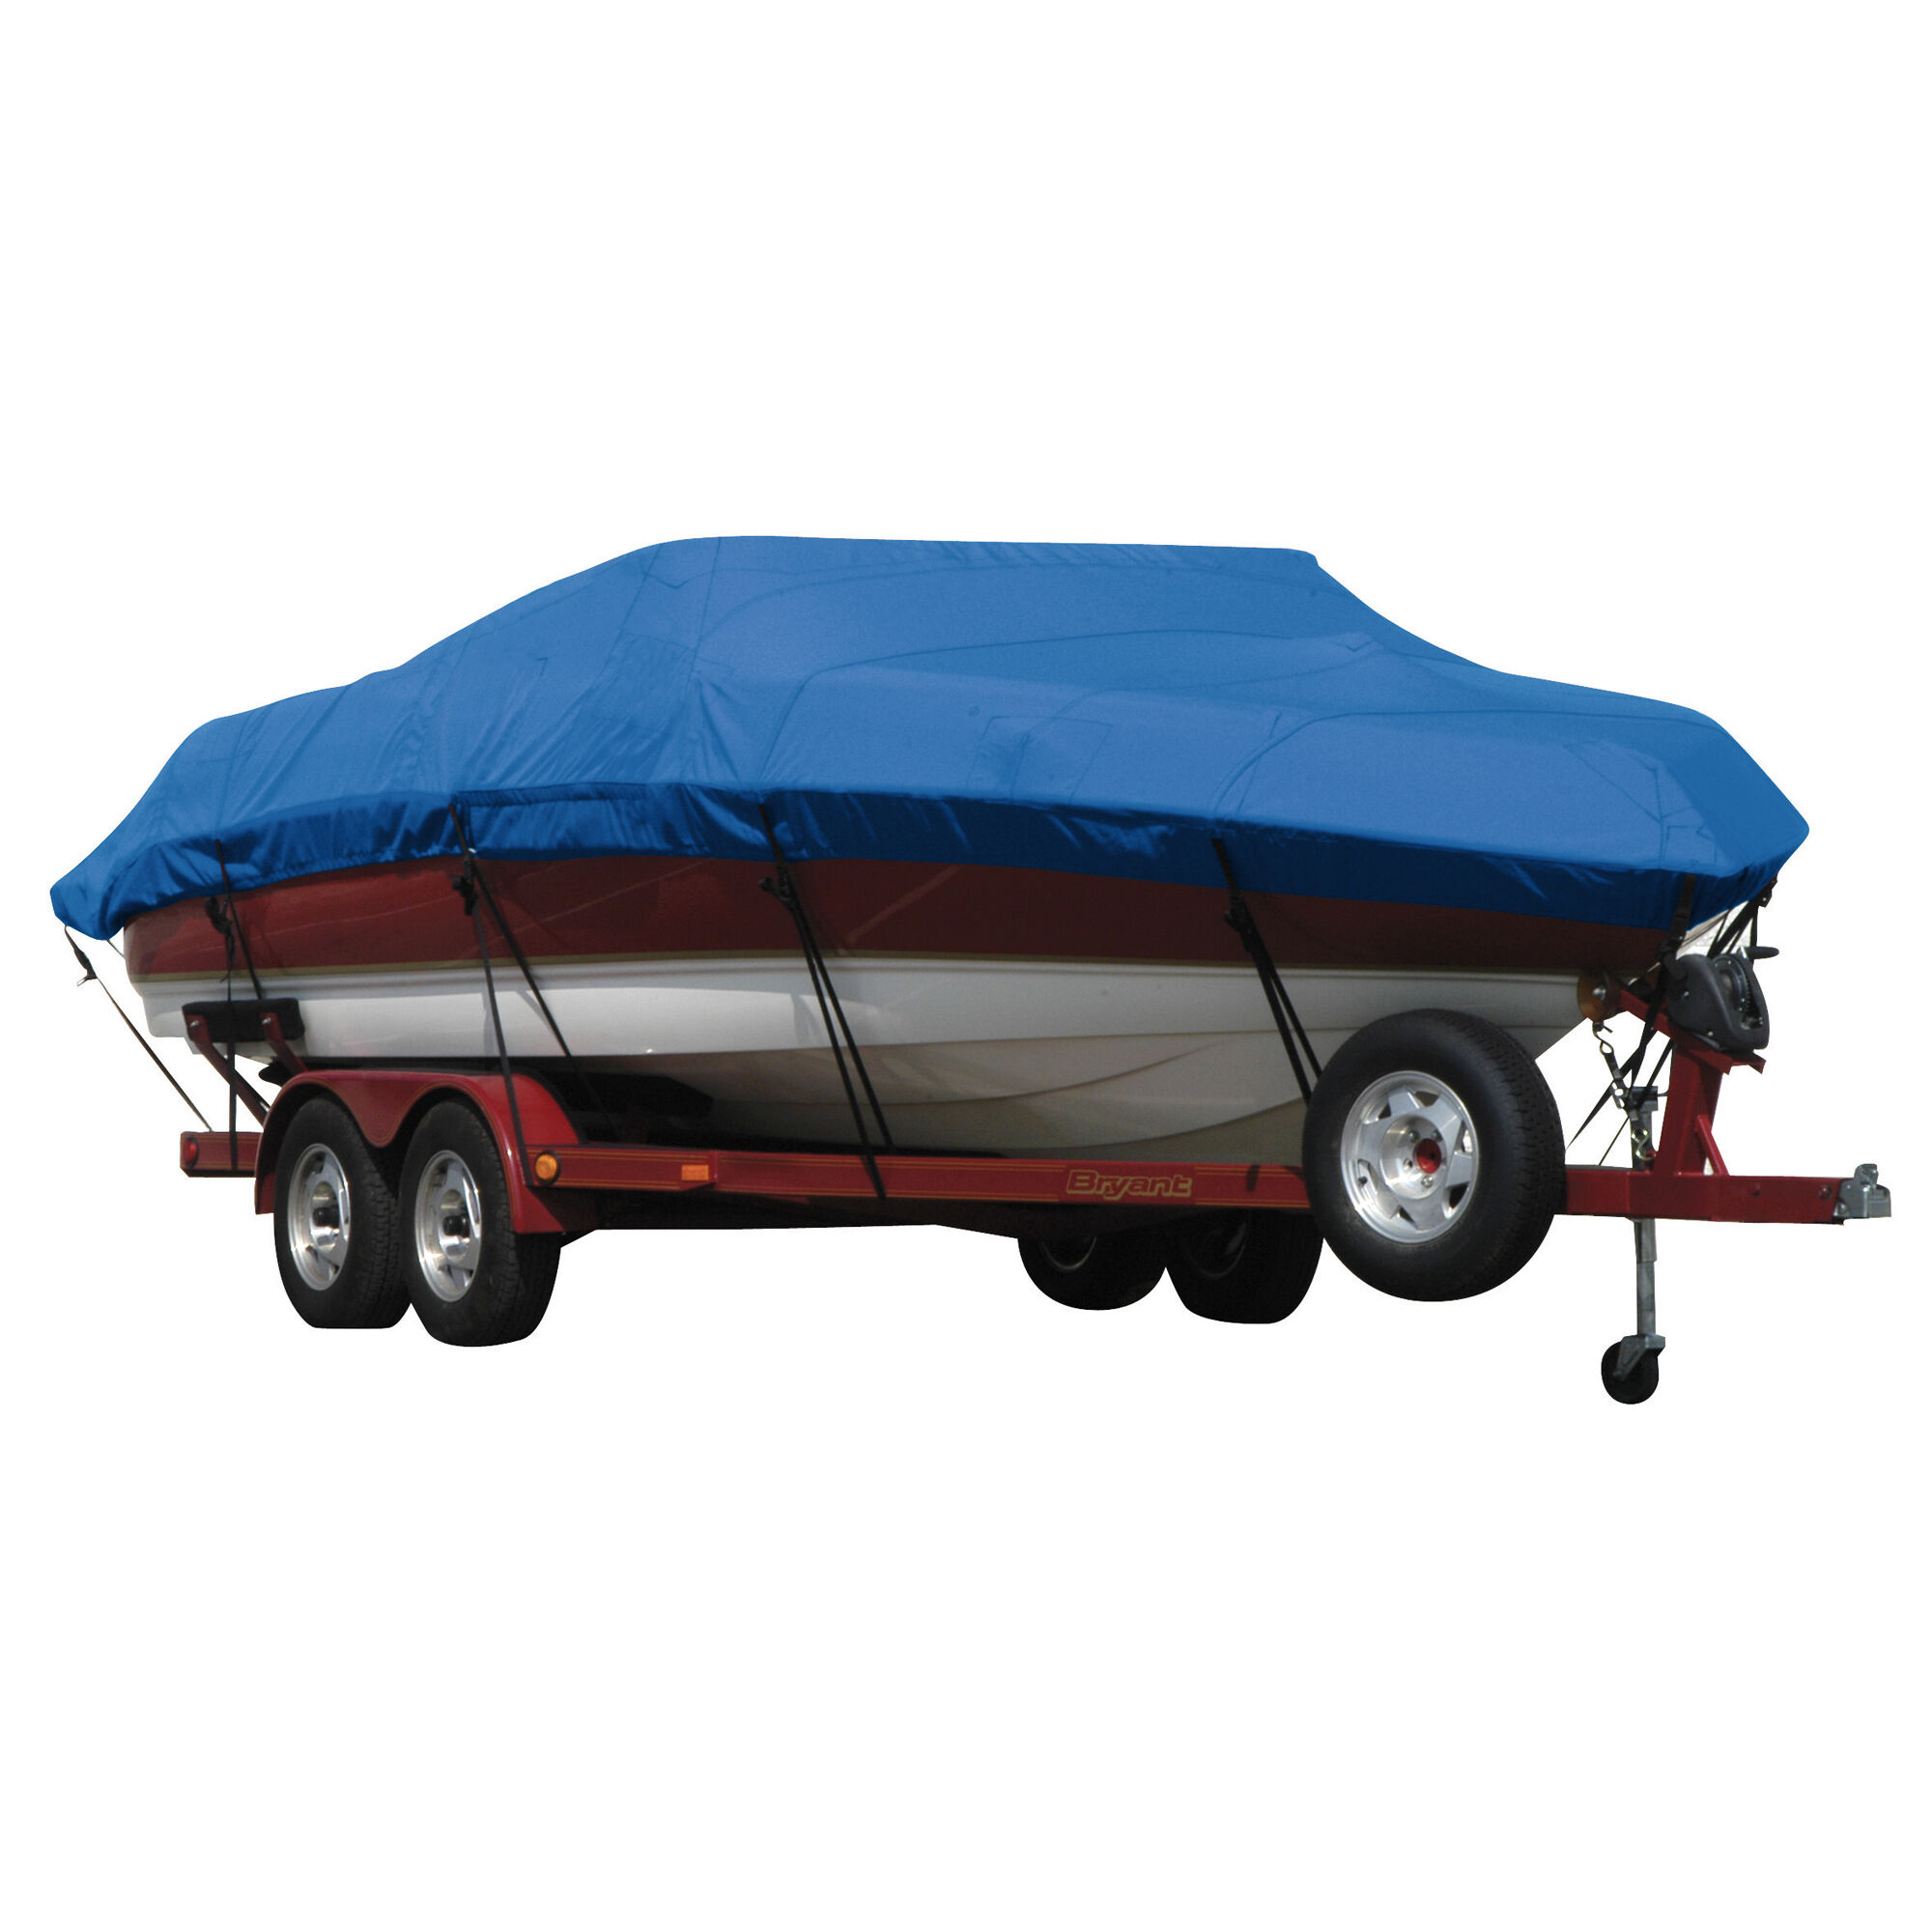 Covermate Exact Fit Sunbrella Boat Cover for Seaswirl Striper 2100 Striper 2100 Hard Top O/B. Pacific Blue